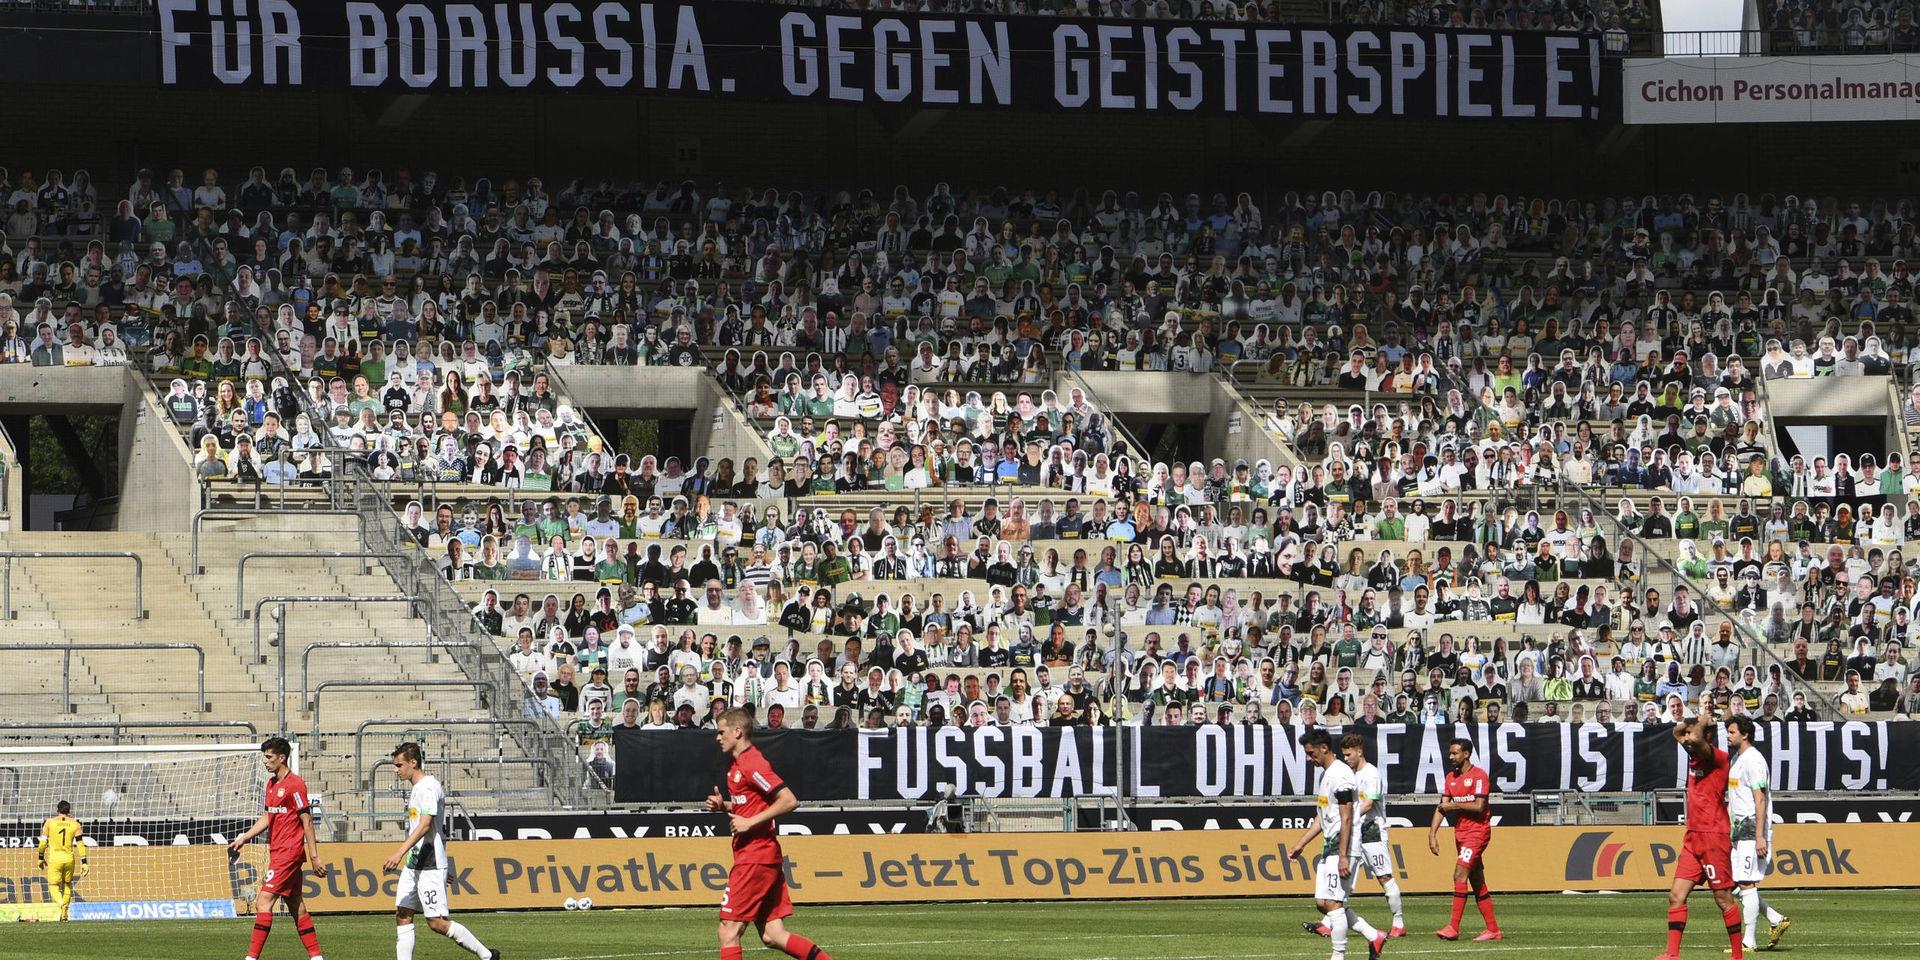 Supportrar i papp på läktarna när Mönchengladbach föll mot Bayer Leverkusen. 'För Borussia. Mot spökmatcher', lyder budskapet på banderollen.